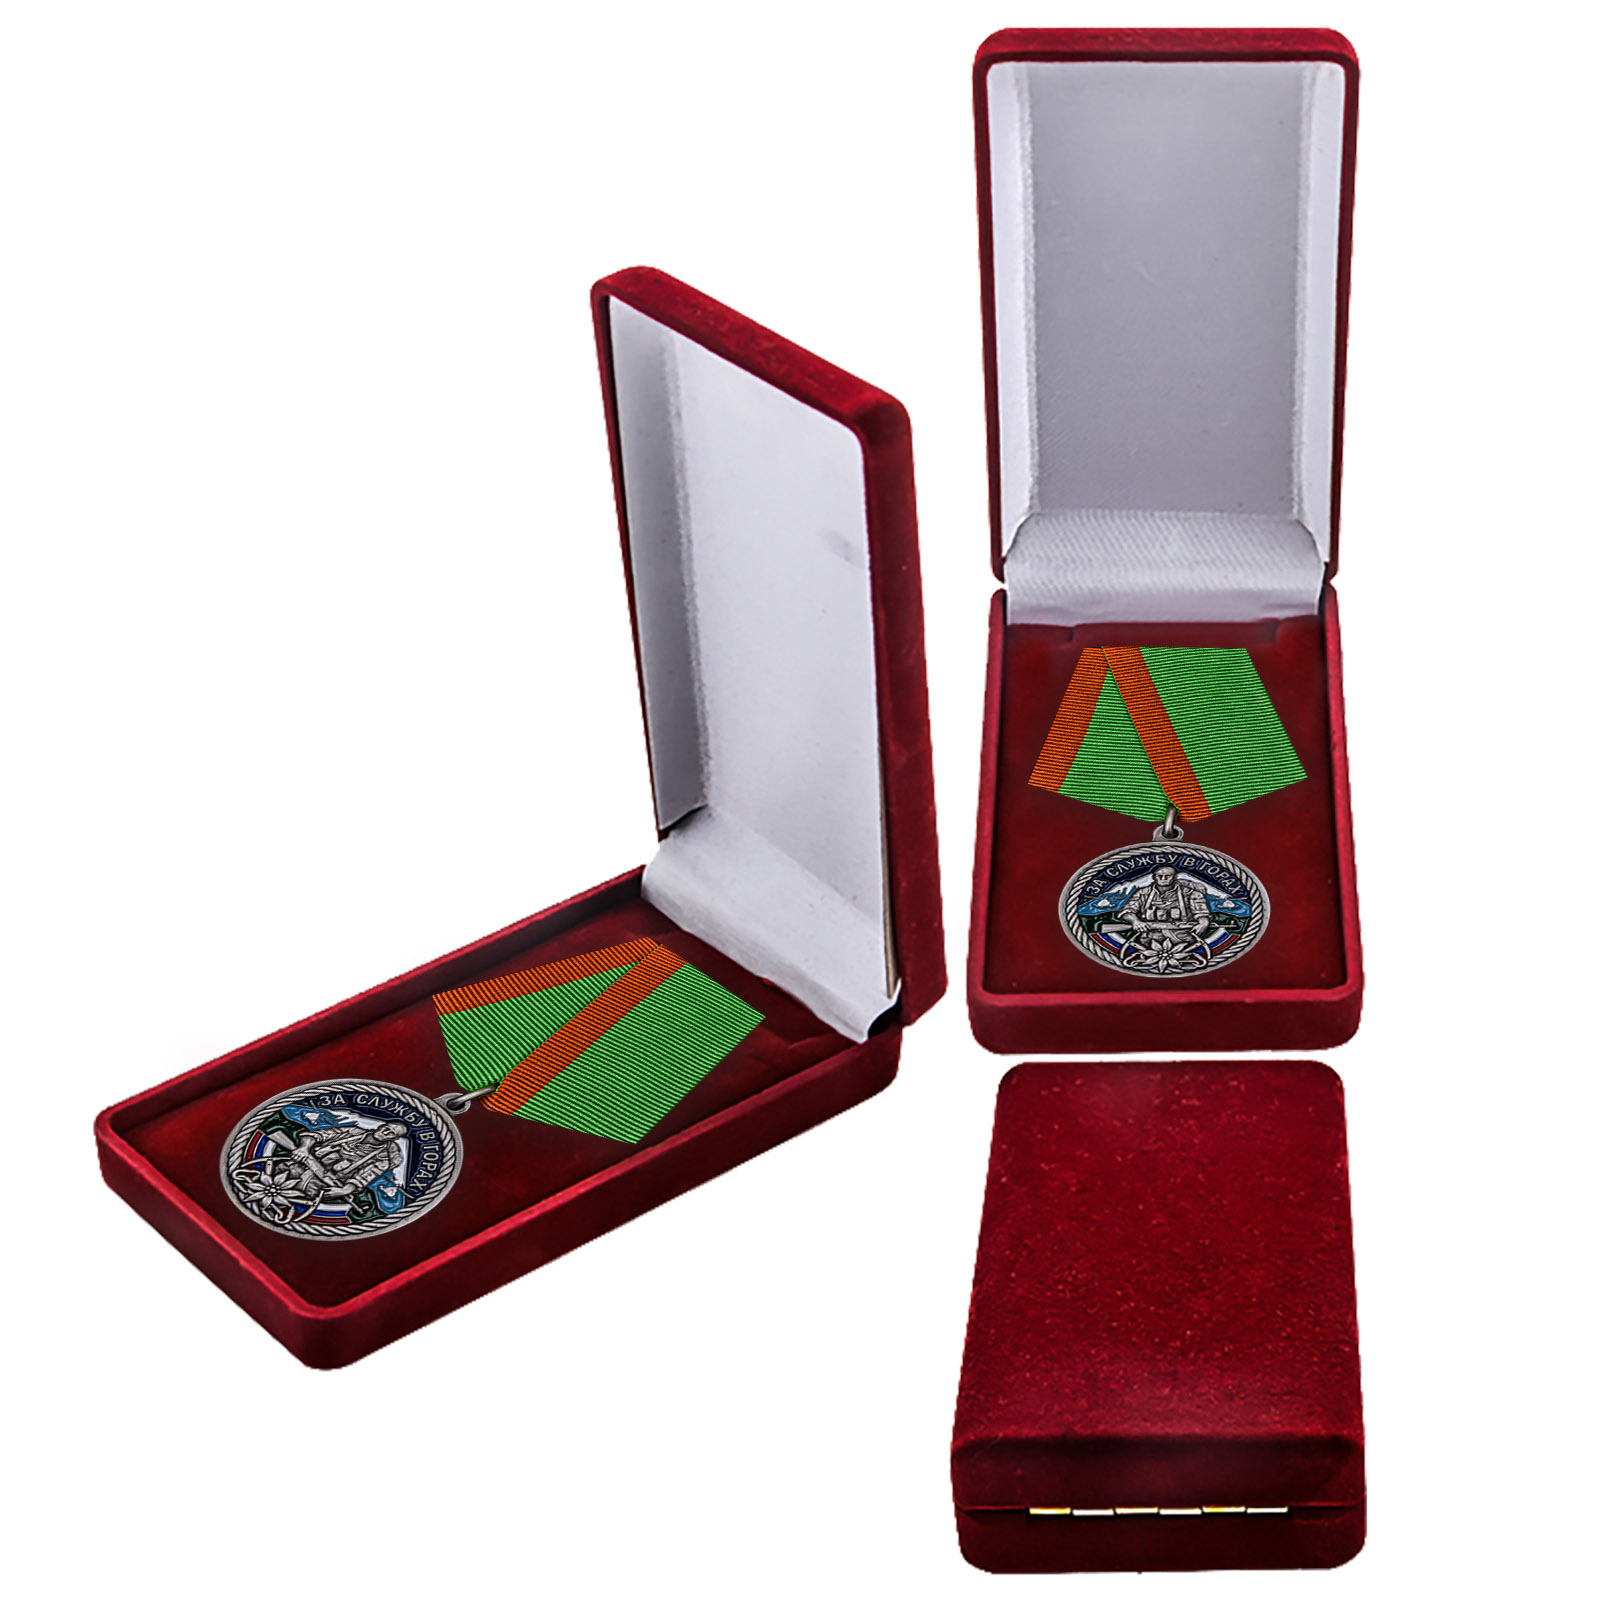 Купить памятную медаль За службу в горах в красивом подарочном футляре по лучшей цене